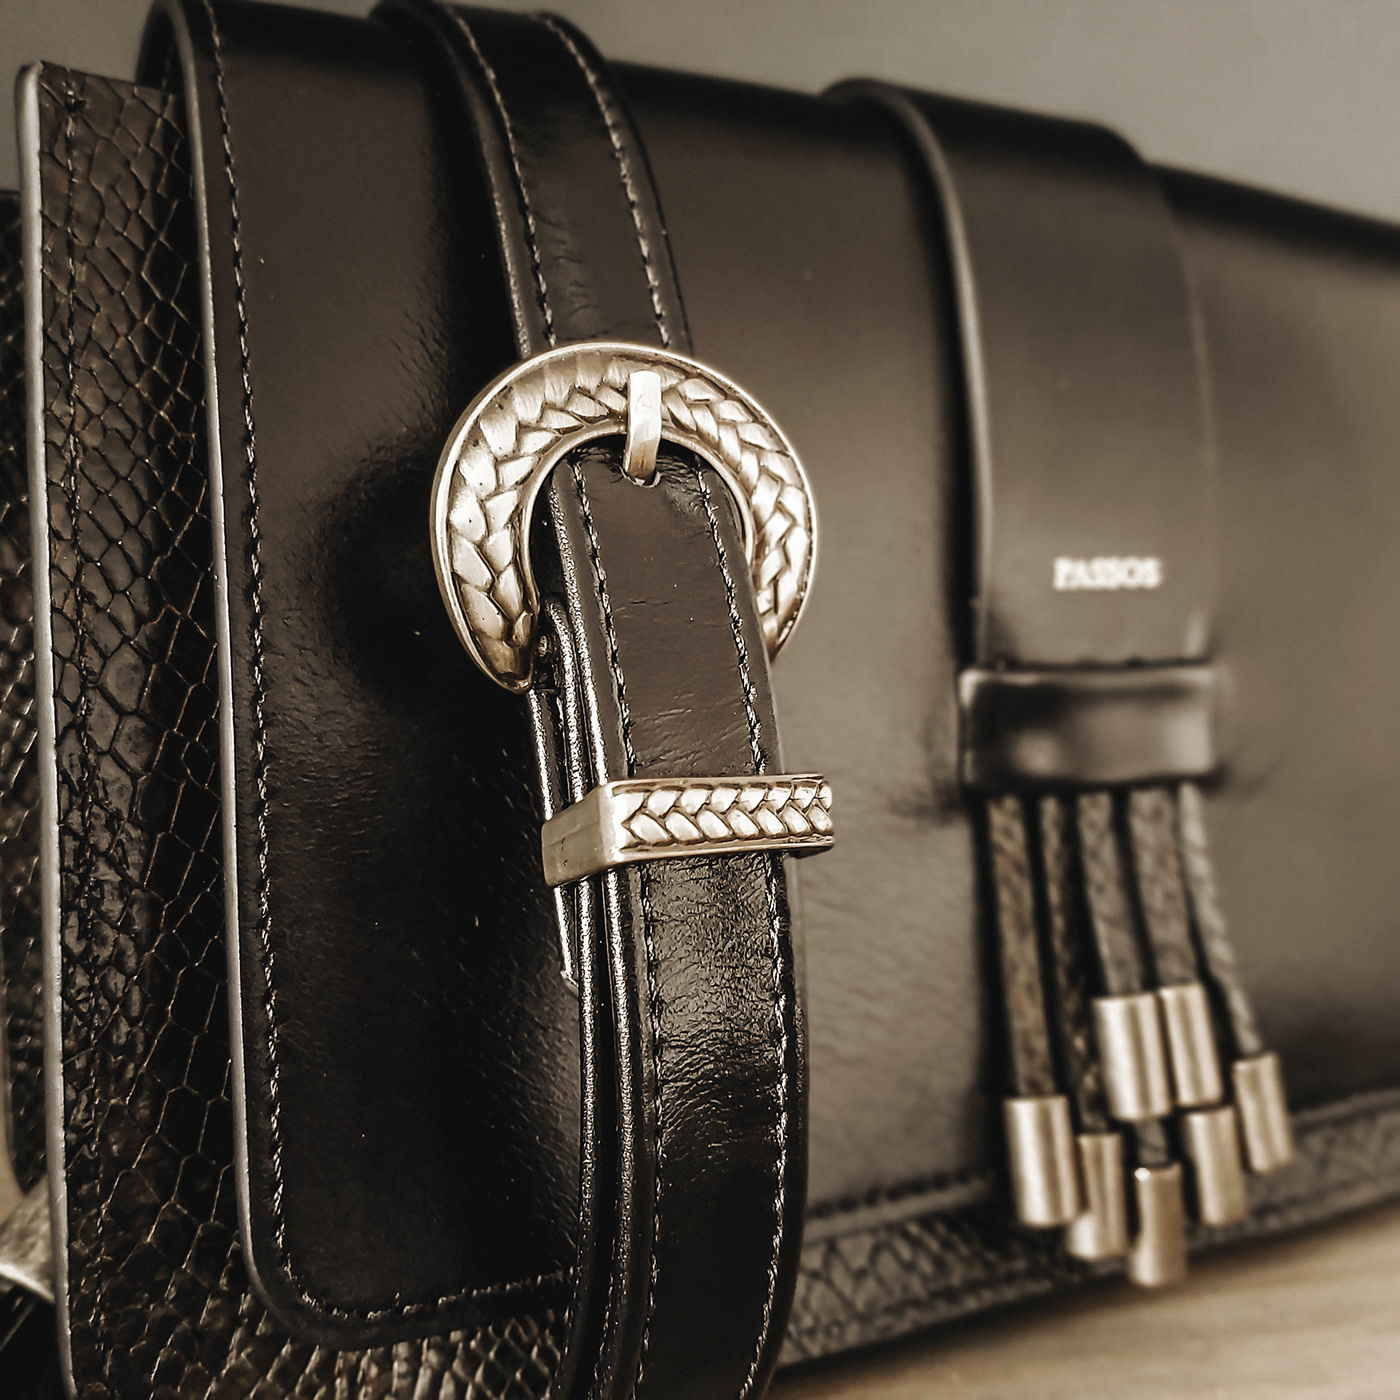 CrossbodyBAG leather leatherbag leatherbags leatherpurse luxurybags luxurygoods shoulderbag